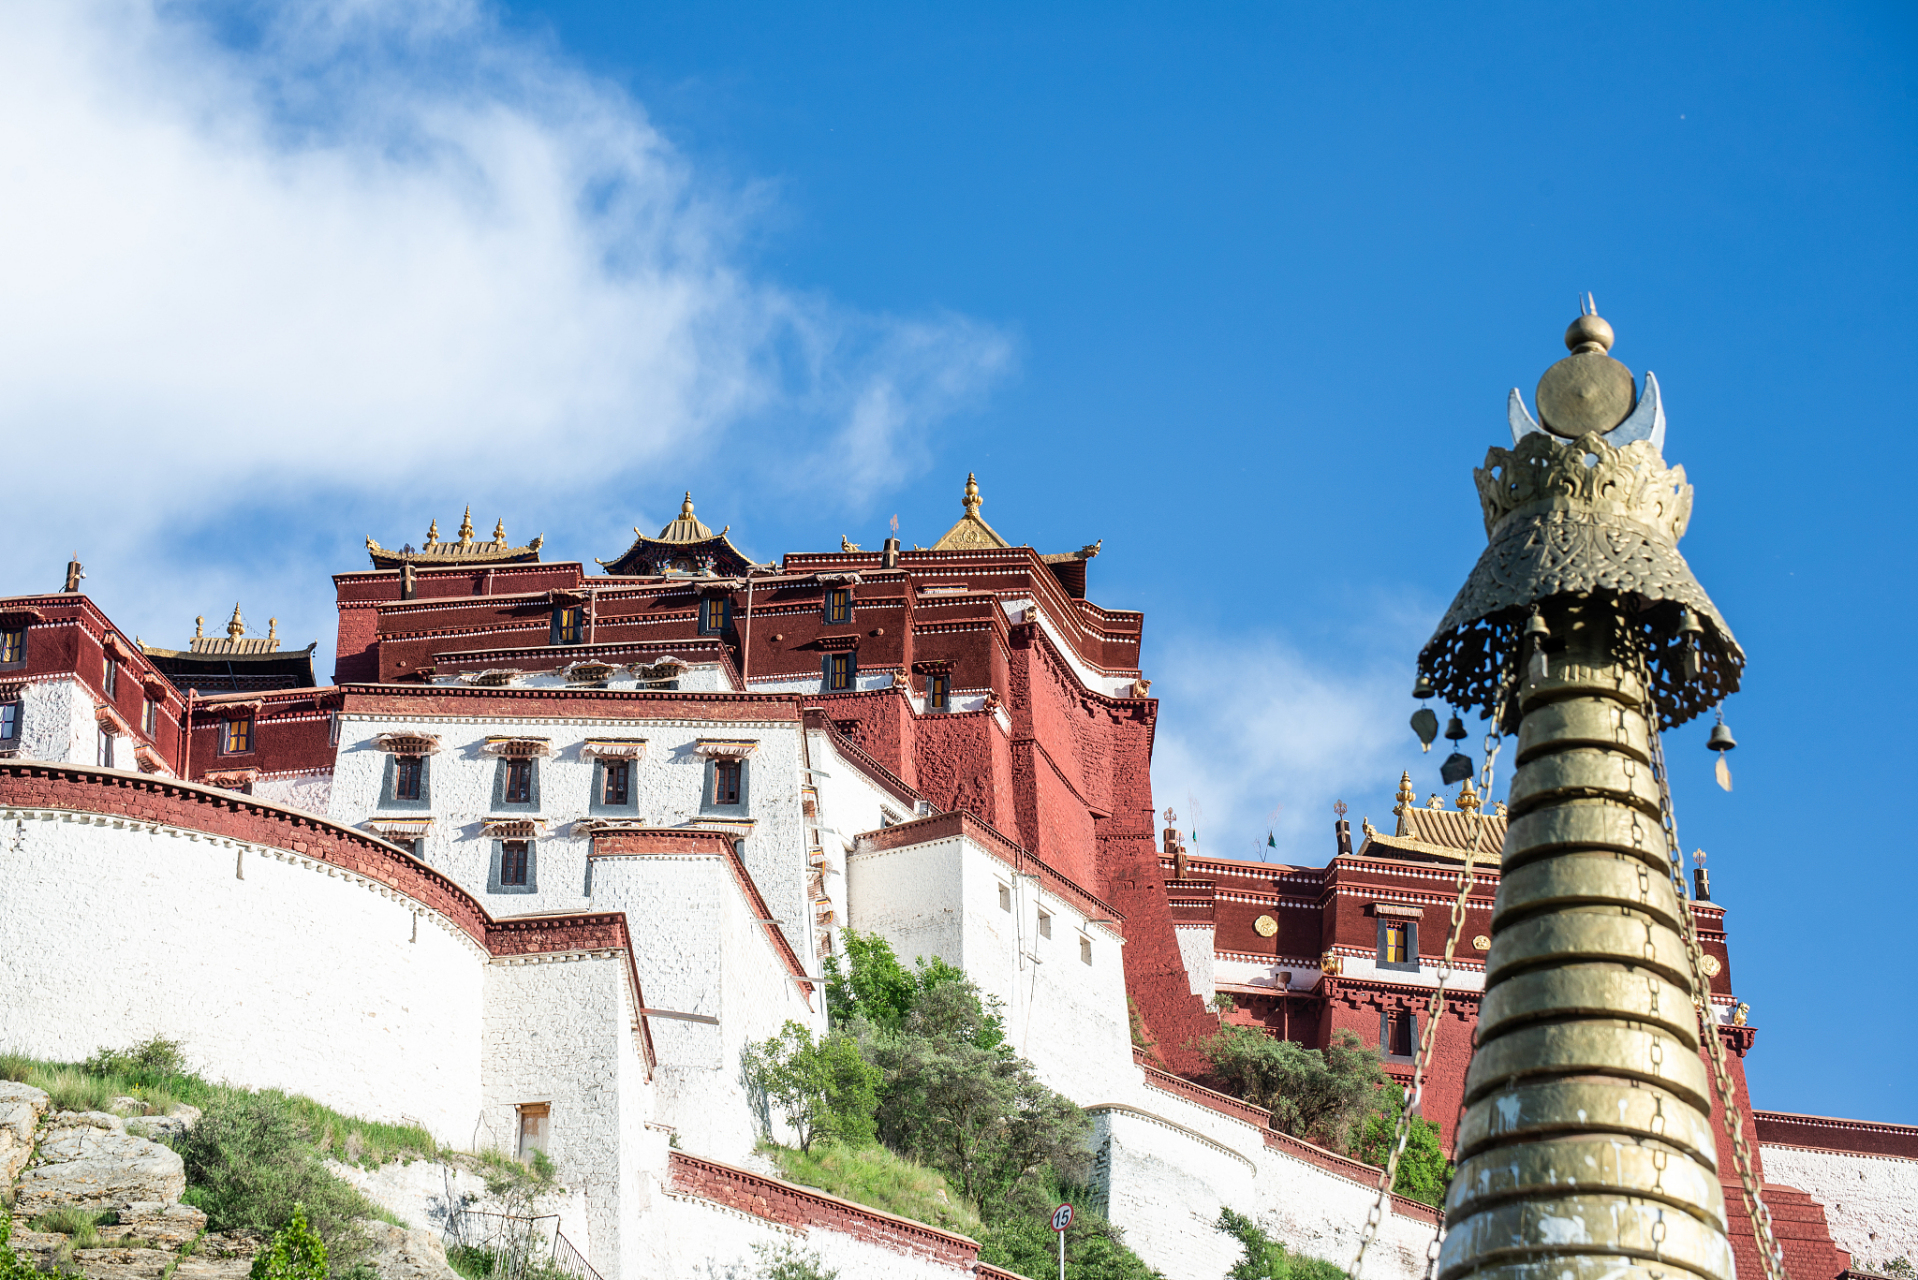 大昭寺,位于拉萨,不仅是藏传佛教的圣地,也是一处融合了宗教与艺术的